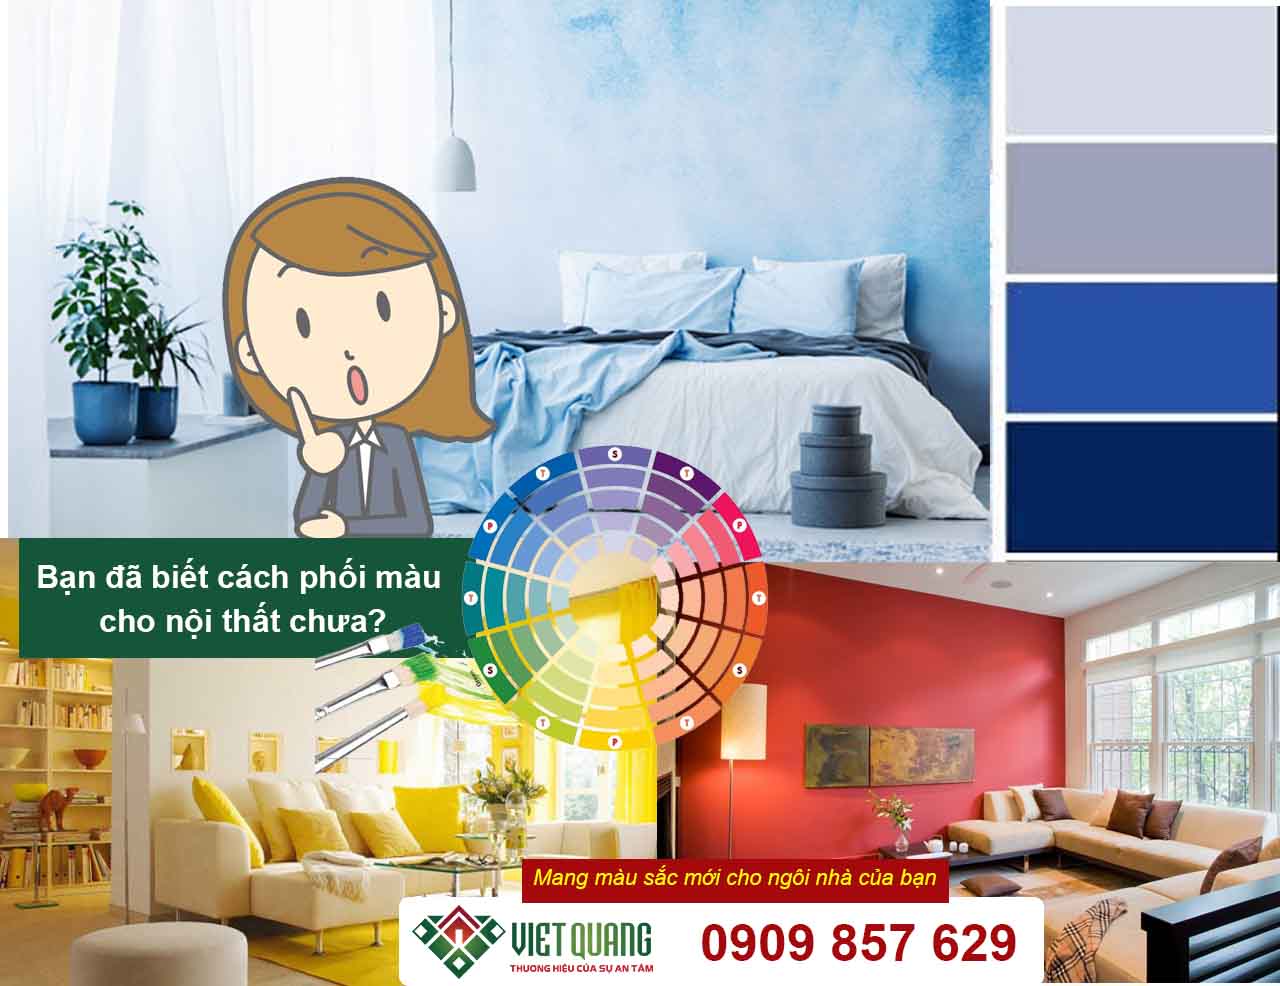 Bạn đã biết cách phối màu cho nội thất chưa? 